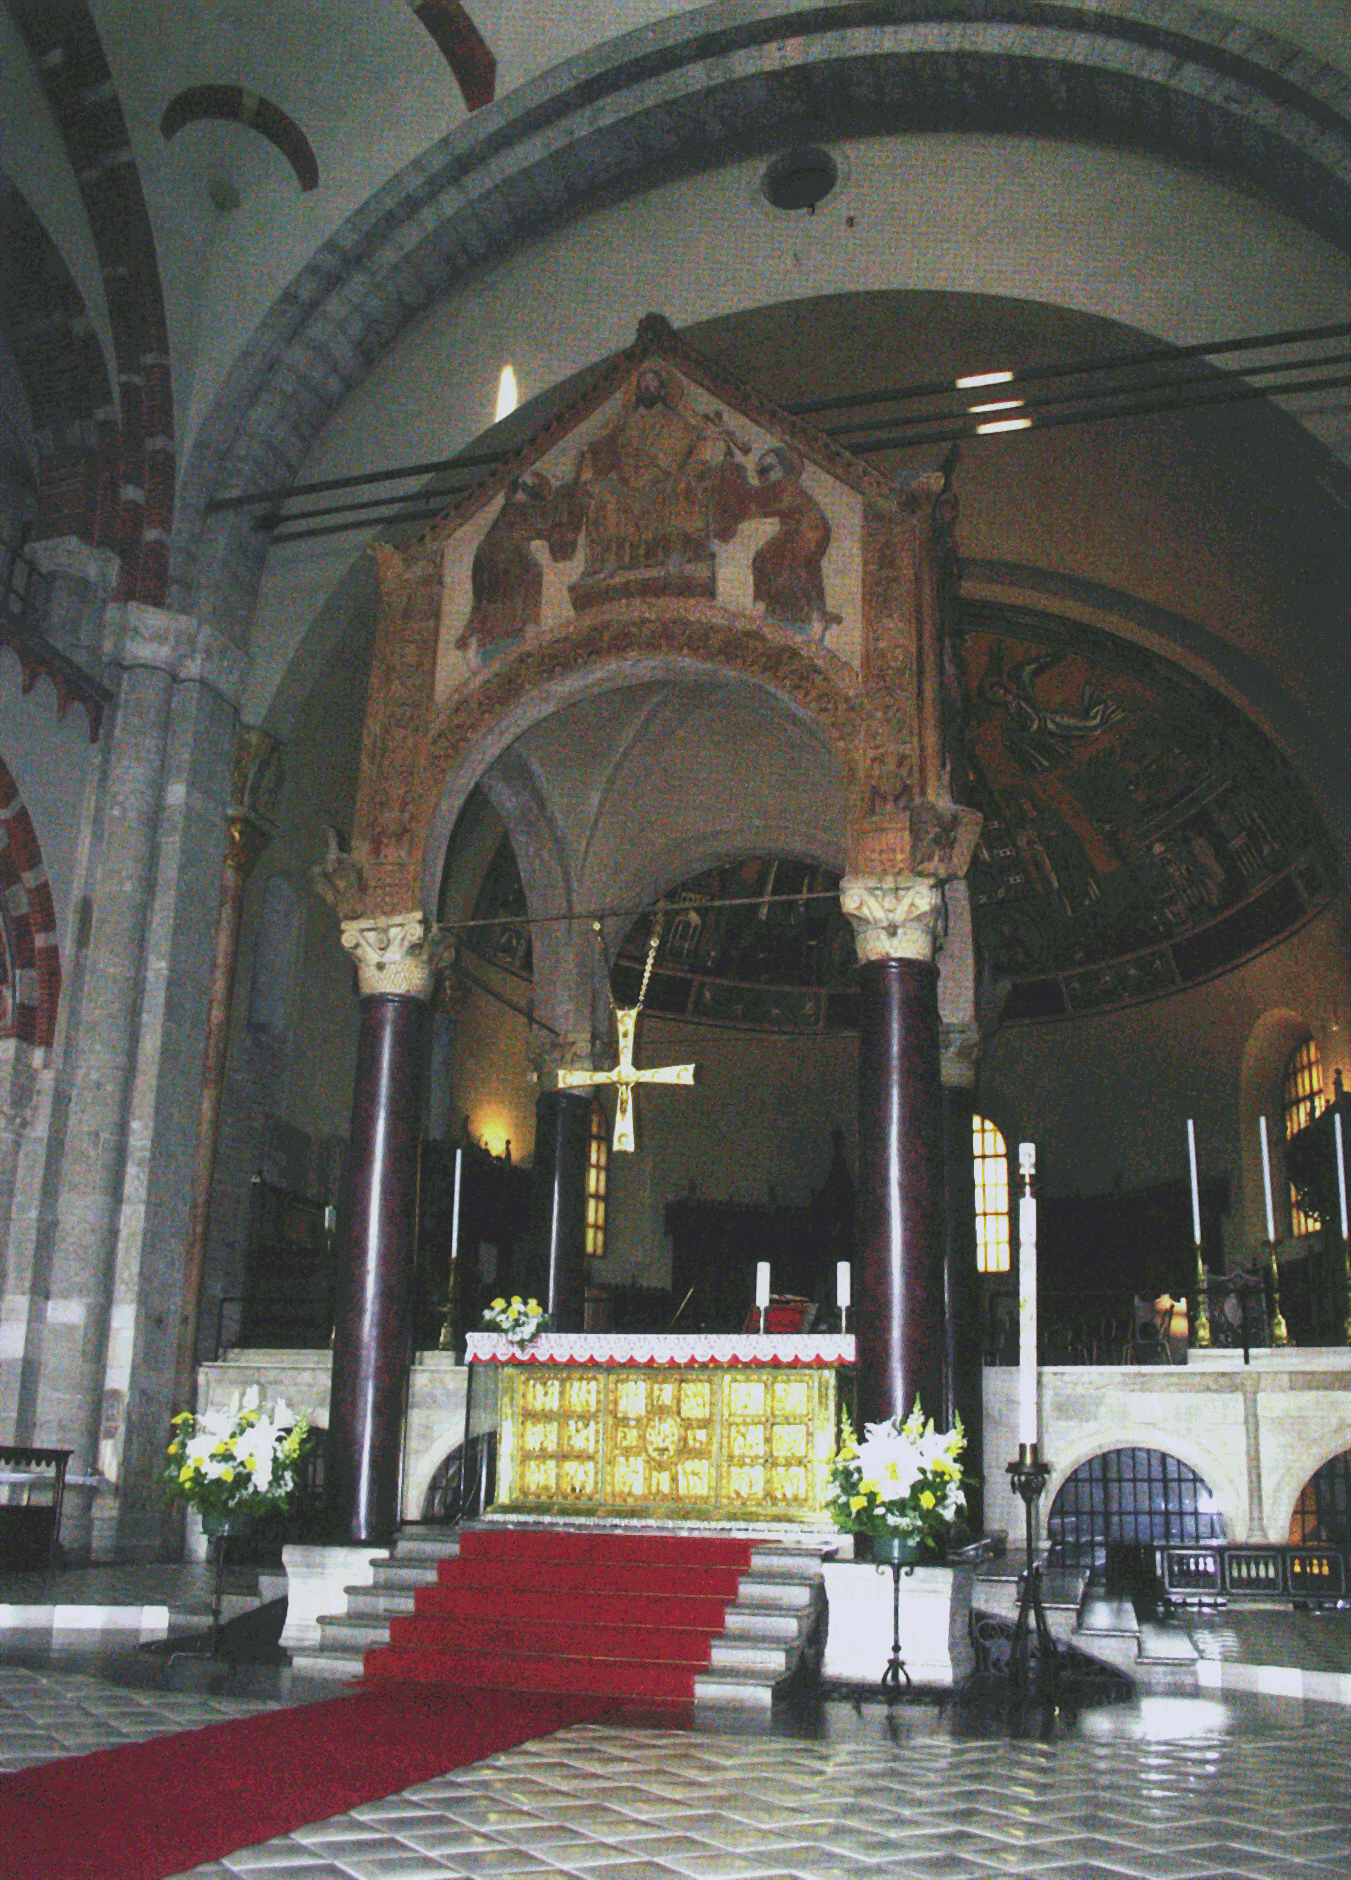 Altarbaldachin von St. Ambrogio (Mailand)